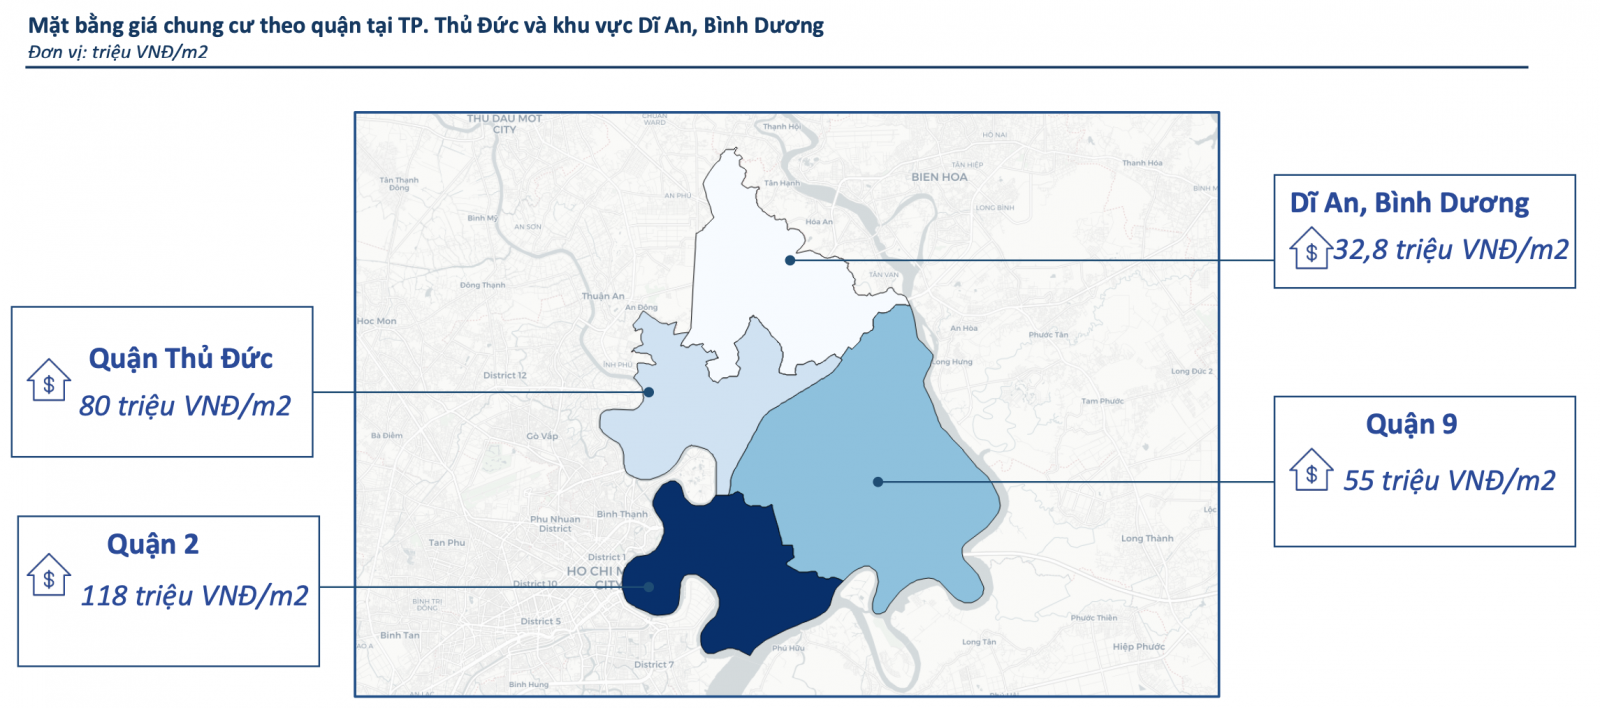 与 Thu Duc 公寓相比，Di An 市的公寓售价低 2.6 倍